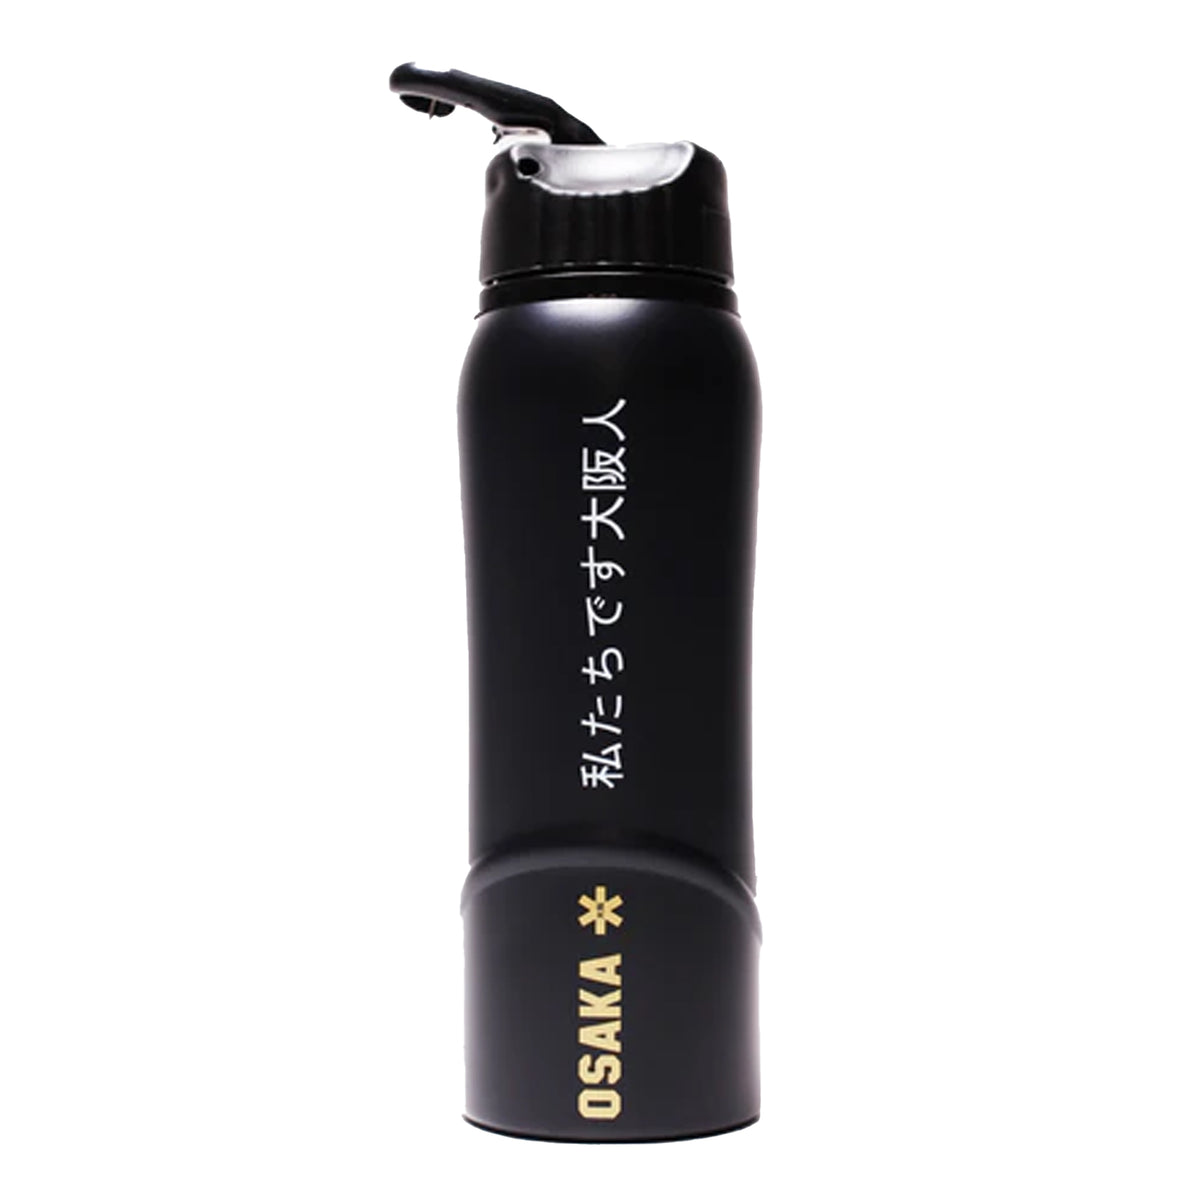 Osaka Kuro Aluminium Water Bottle: Black/Bronze